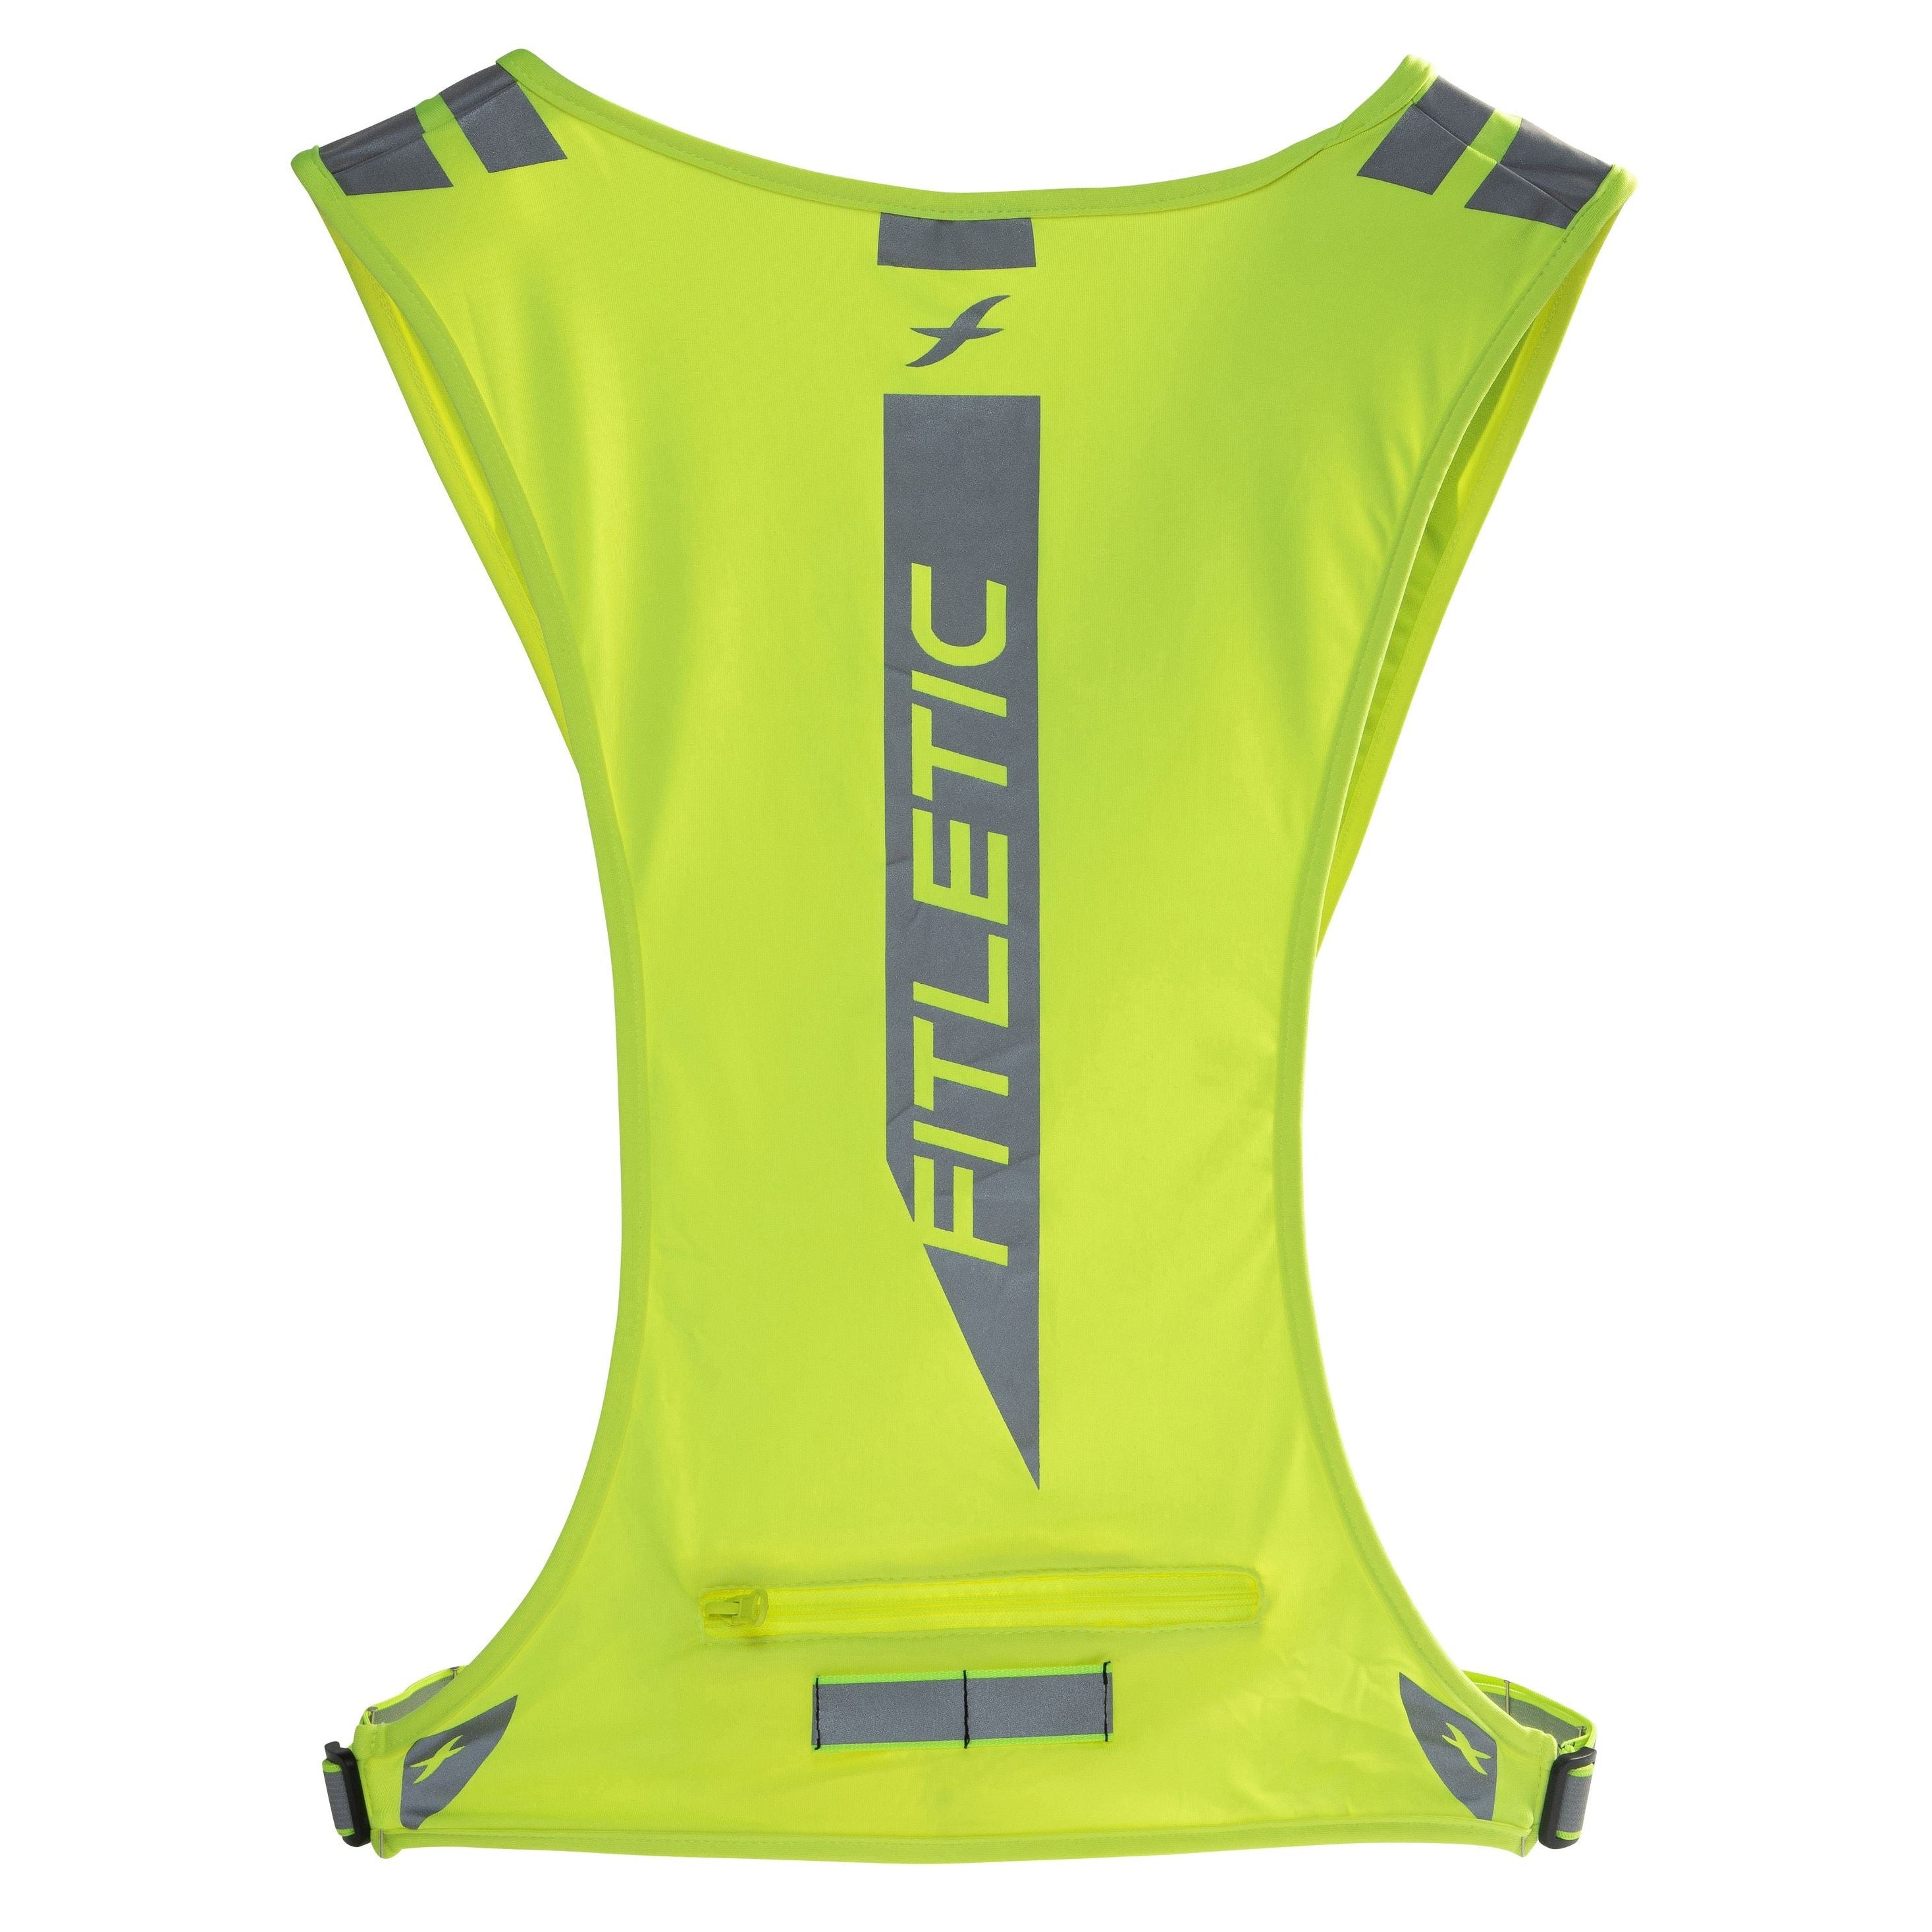 FITLETIC® Glo - Laufweste mit Reflektoren für Joggen, Laufen, Sport - reflektierende Warnweste